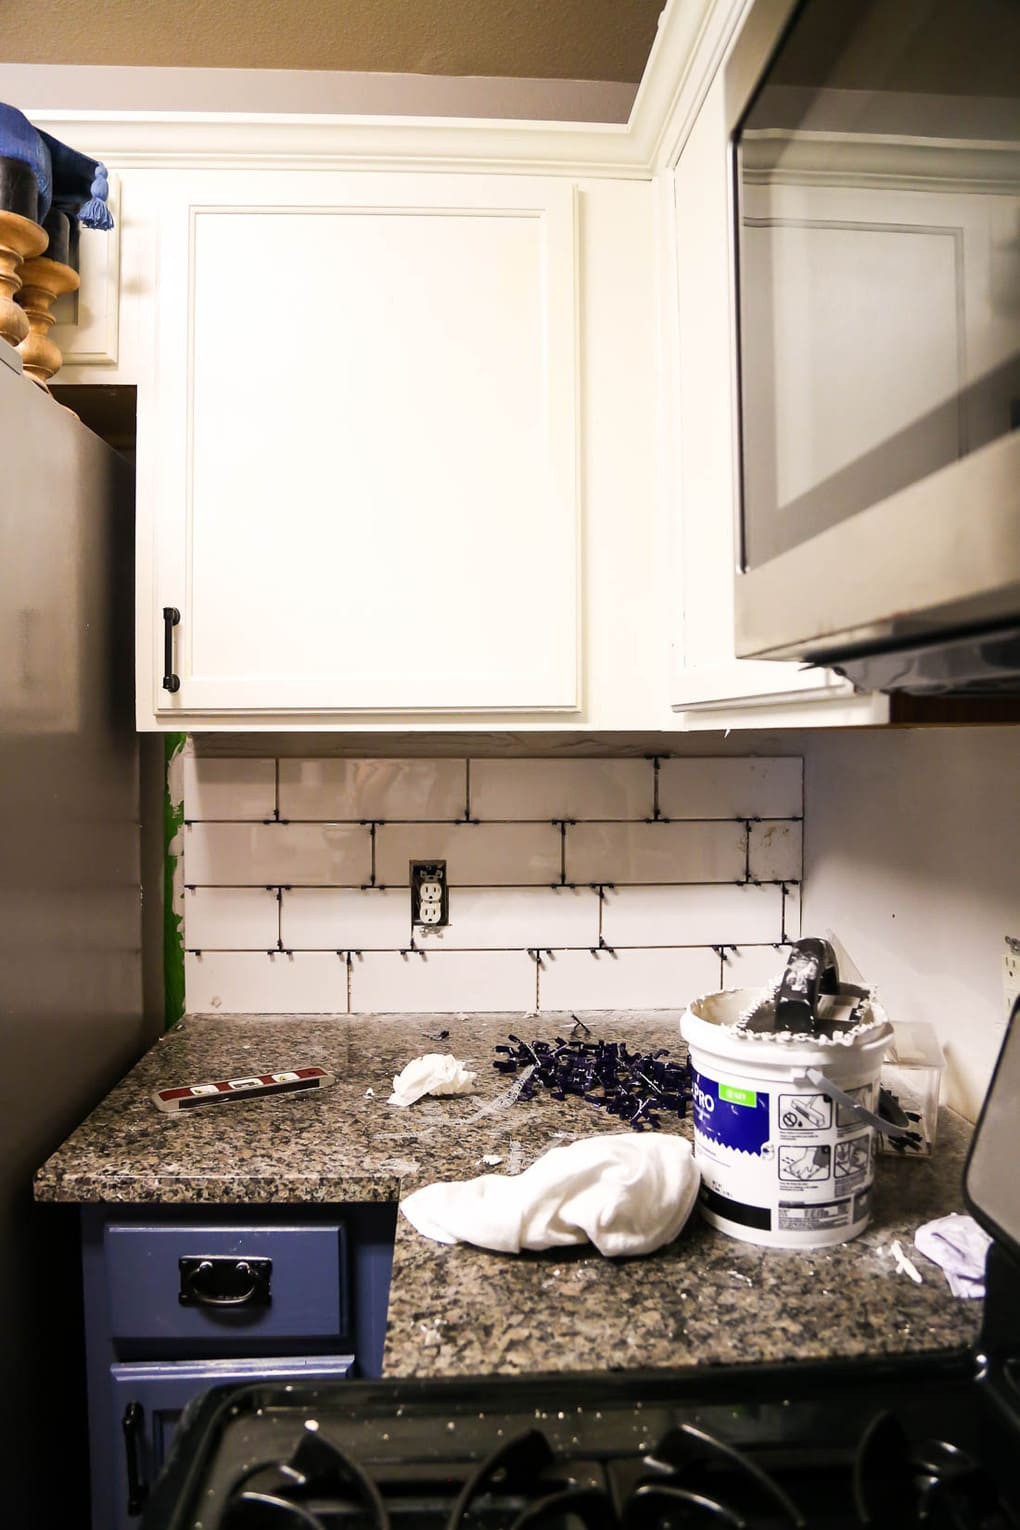 Installing A Kitchen Backsplash
 How to Install a Subway Tile Backsplash Tips & Tricks